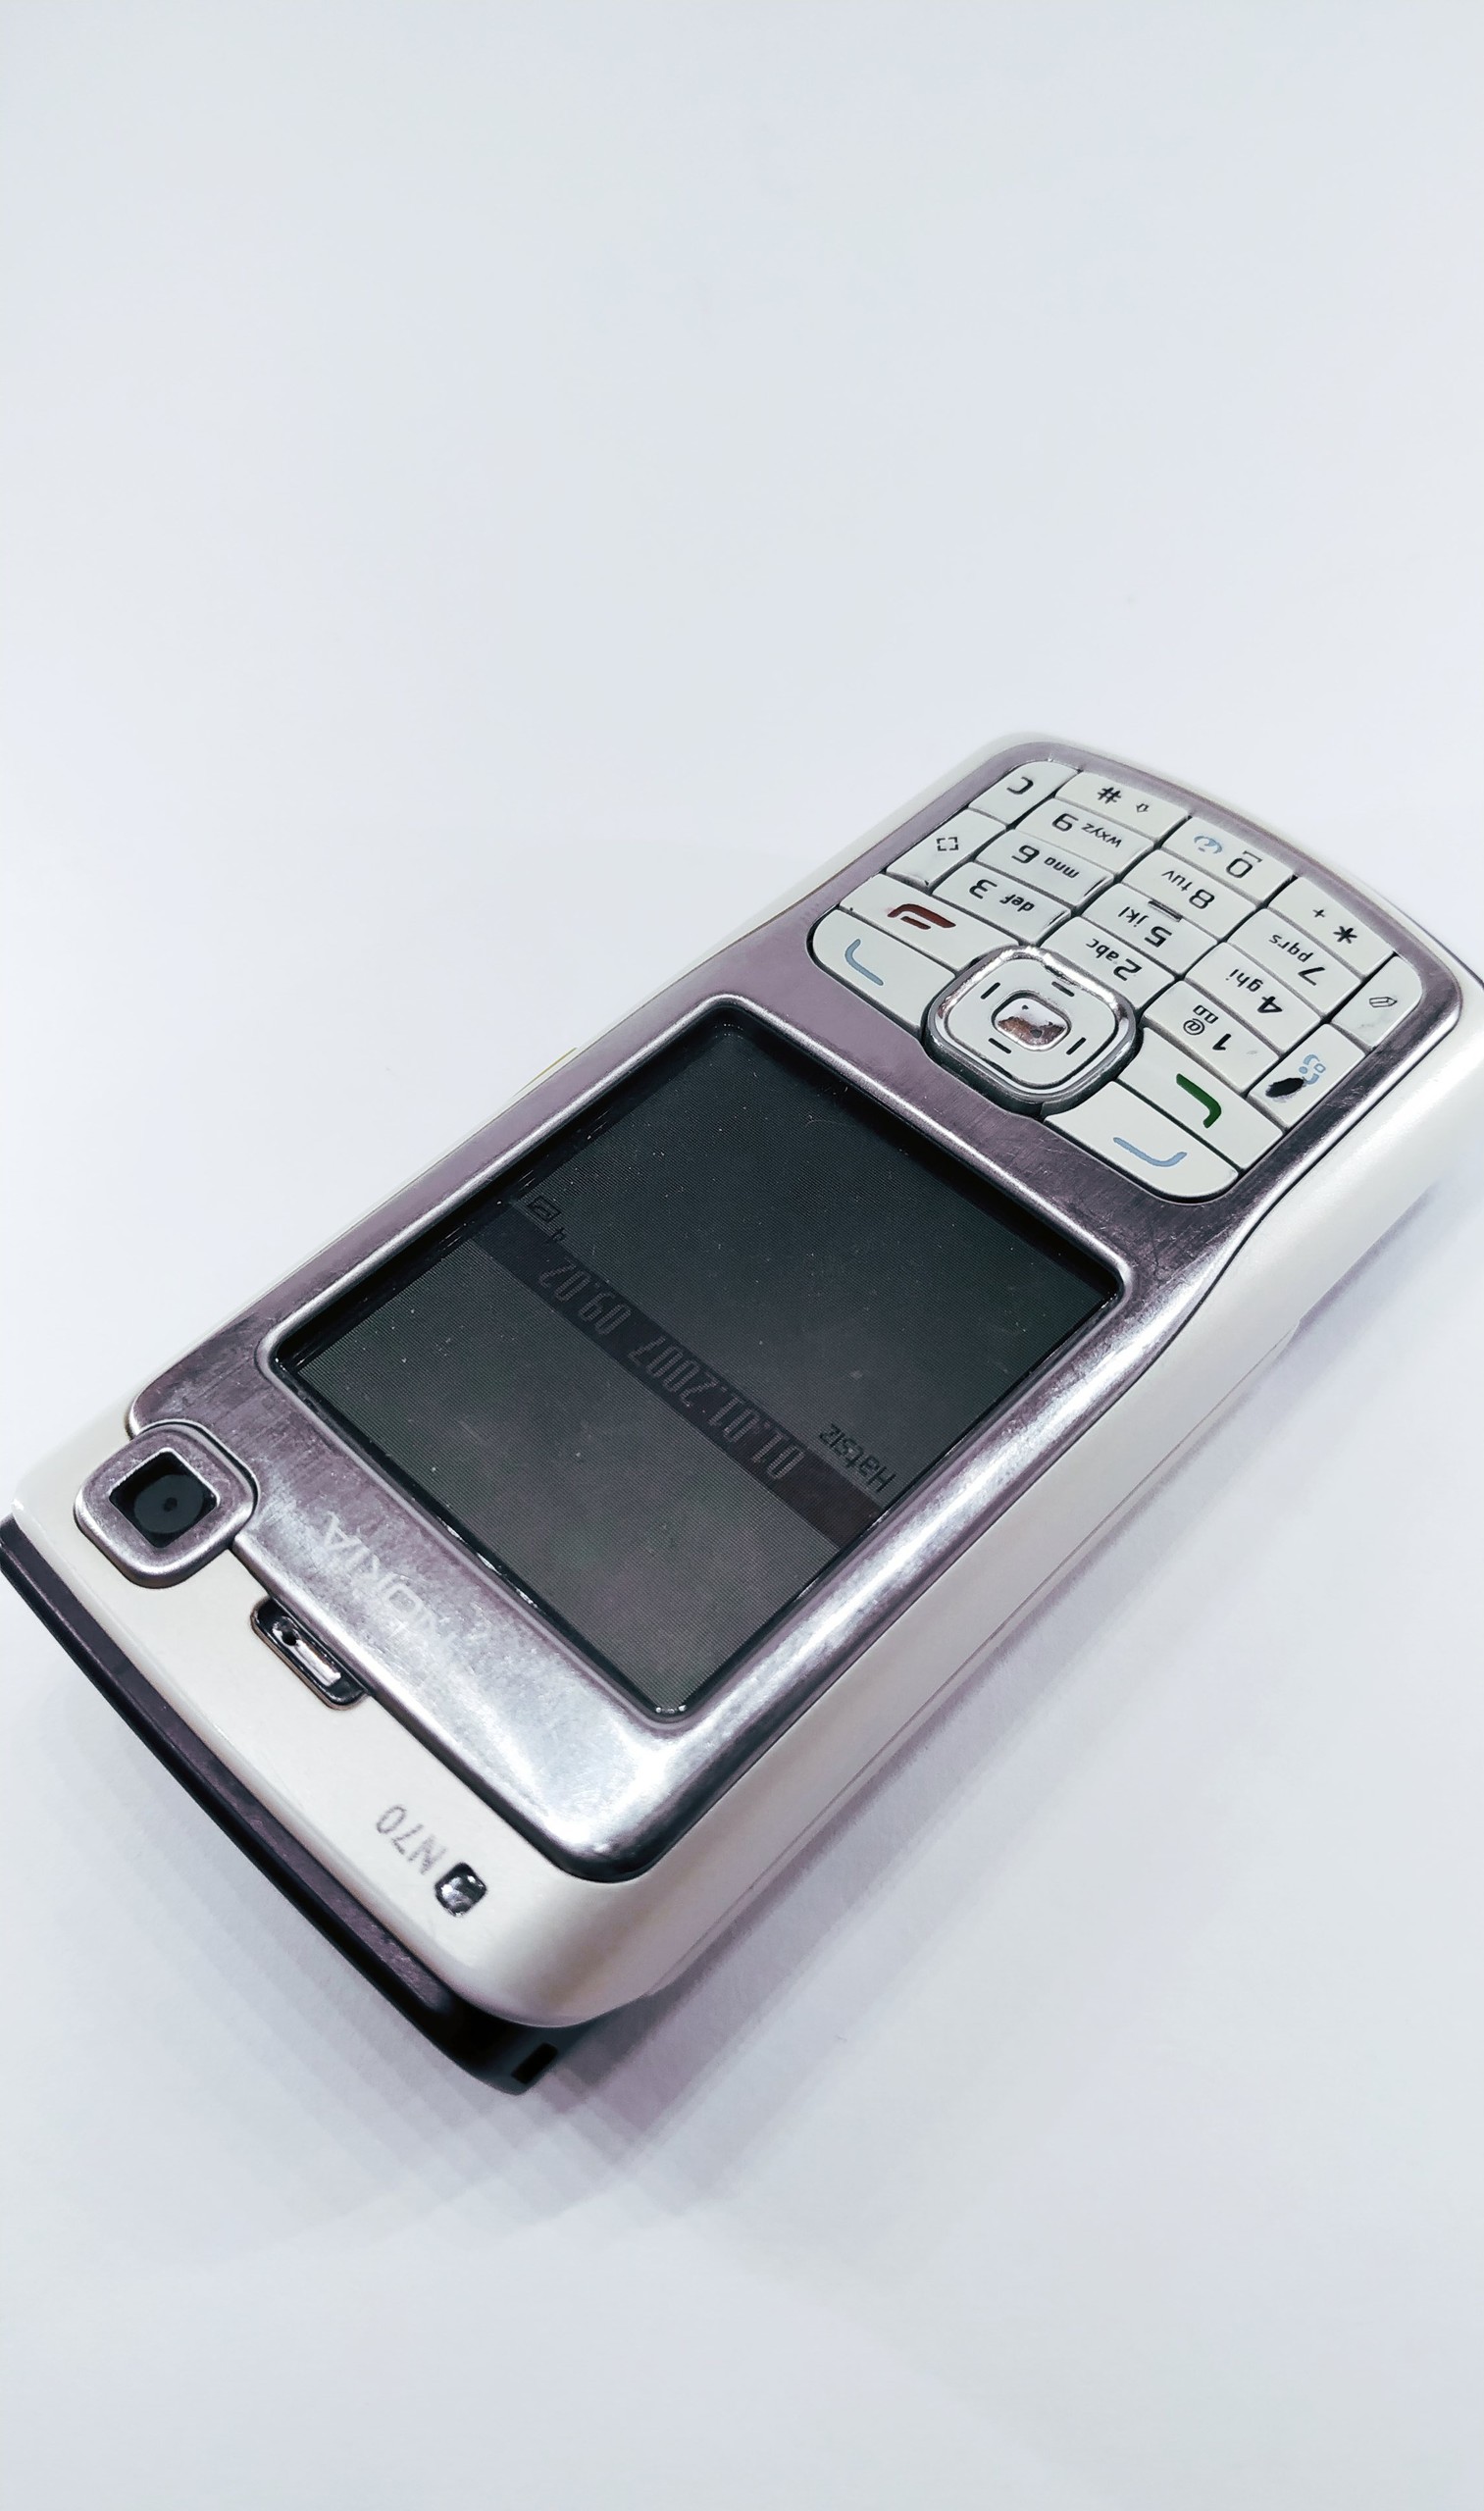 Nokia N70 Sadece Cihaz verilecek